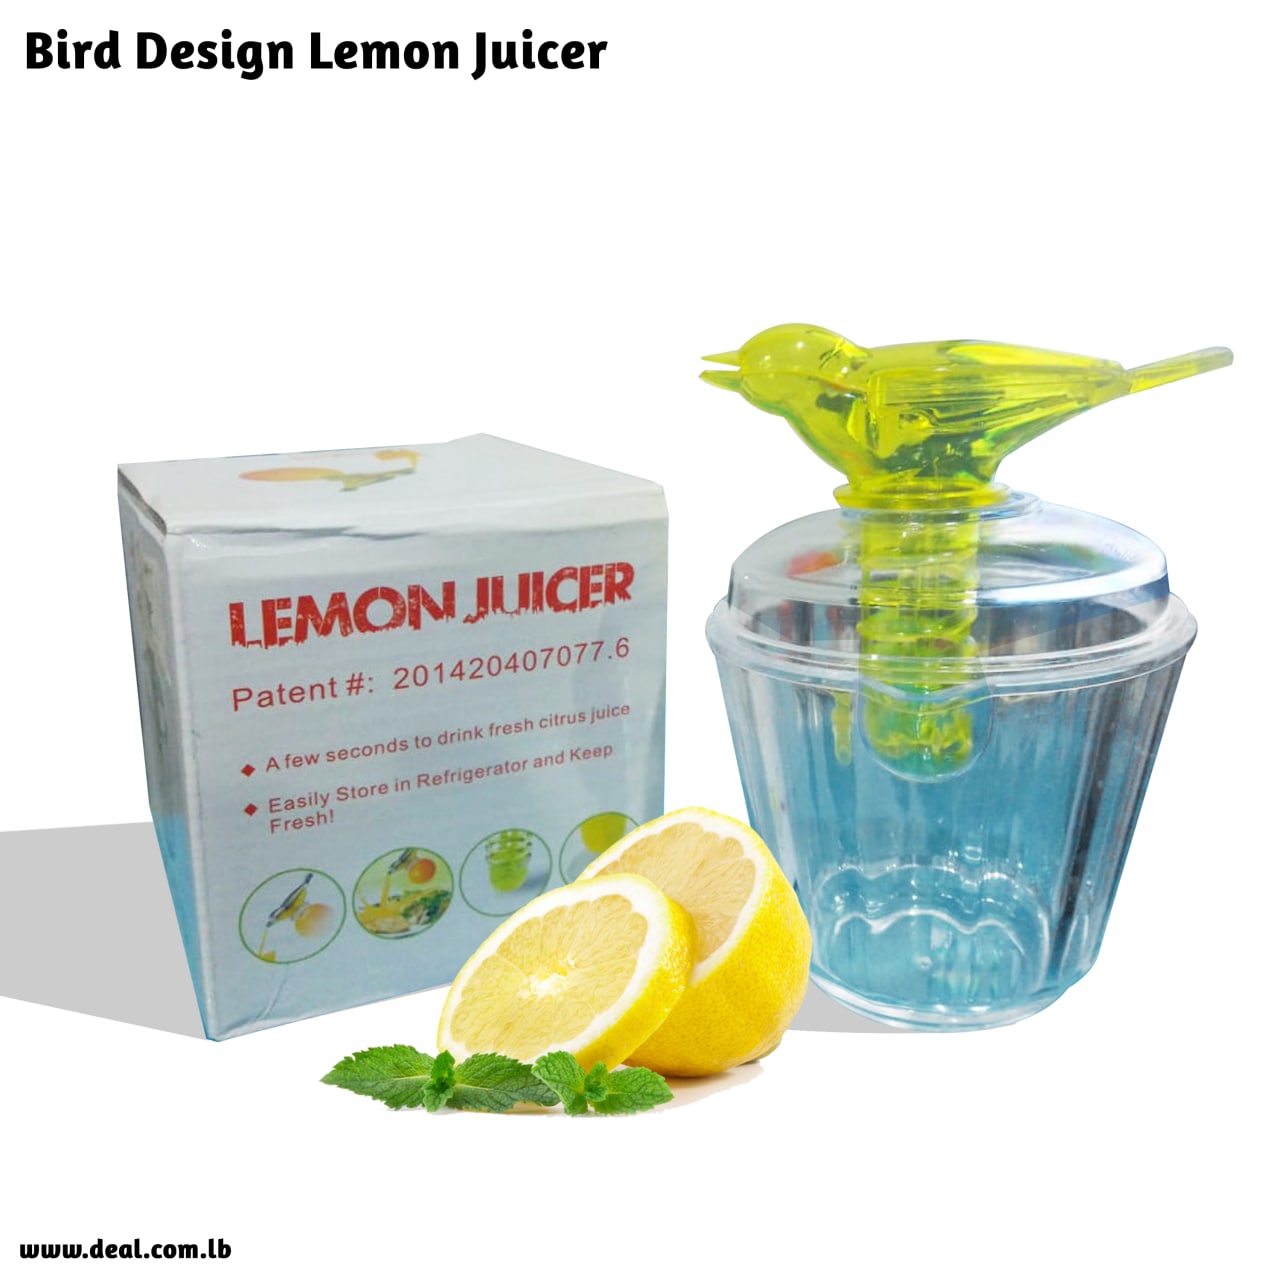 Lemon Juicer Bird Design